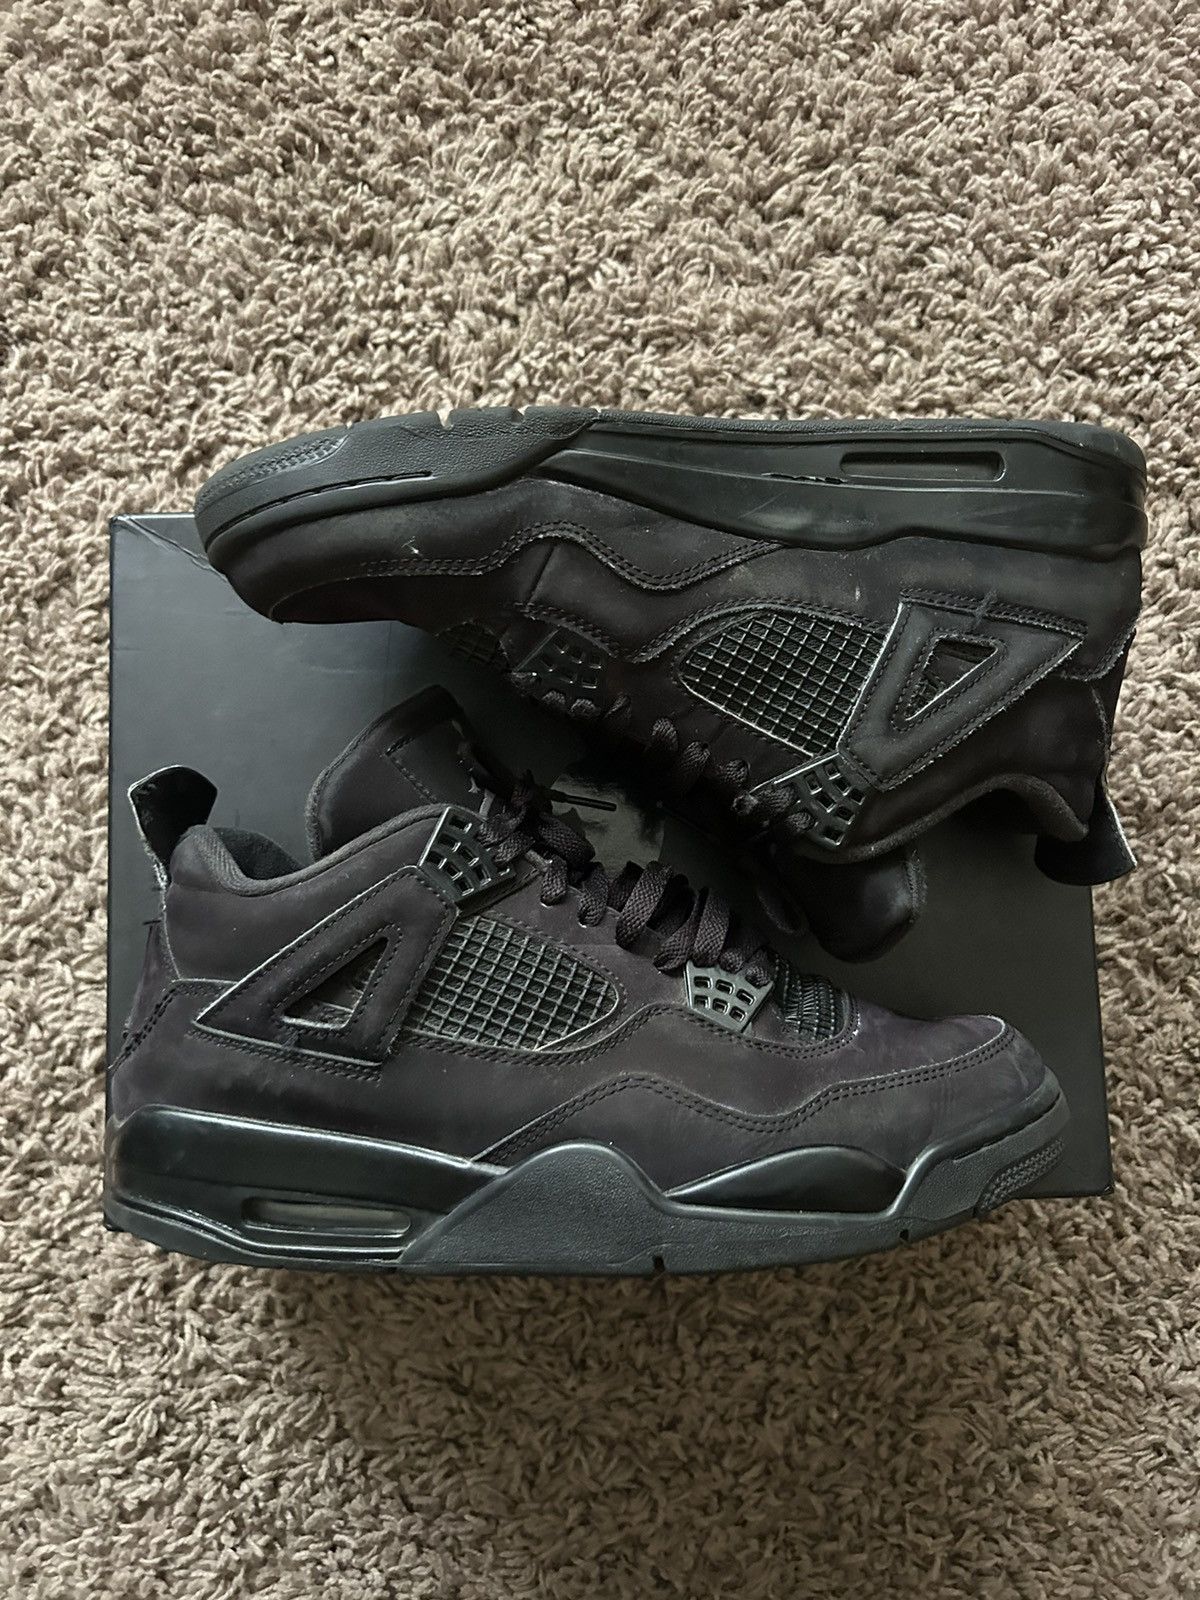 Pre-owned Jordan Nike Jordan 4 Retro Black Cat Shoes